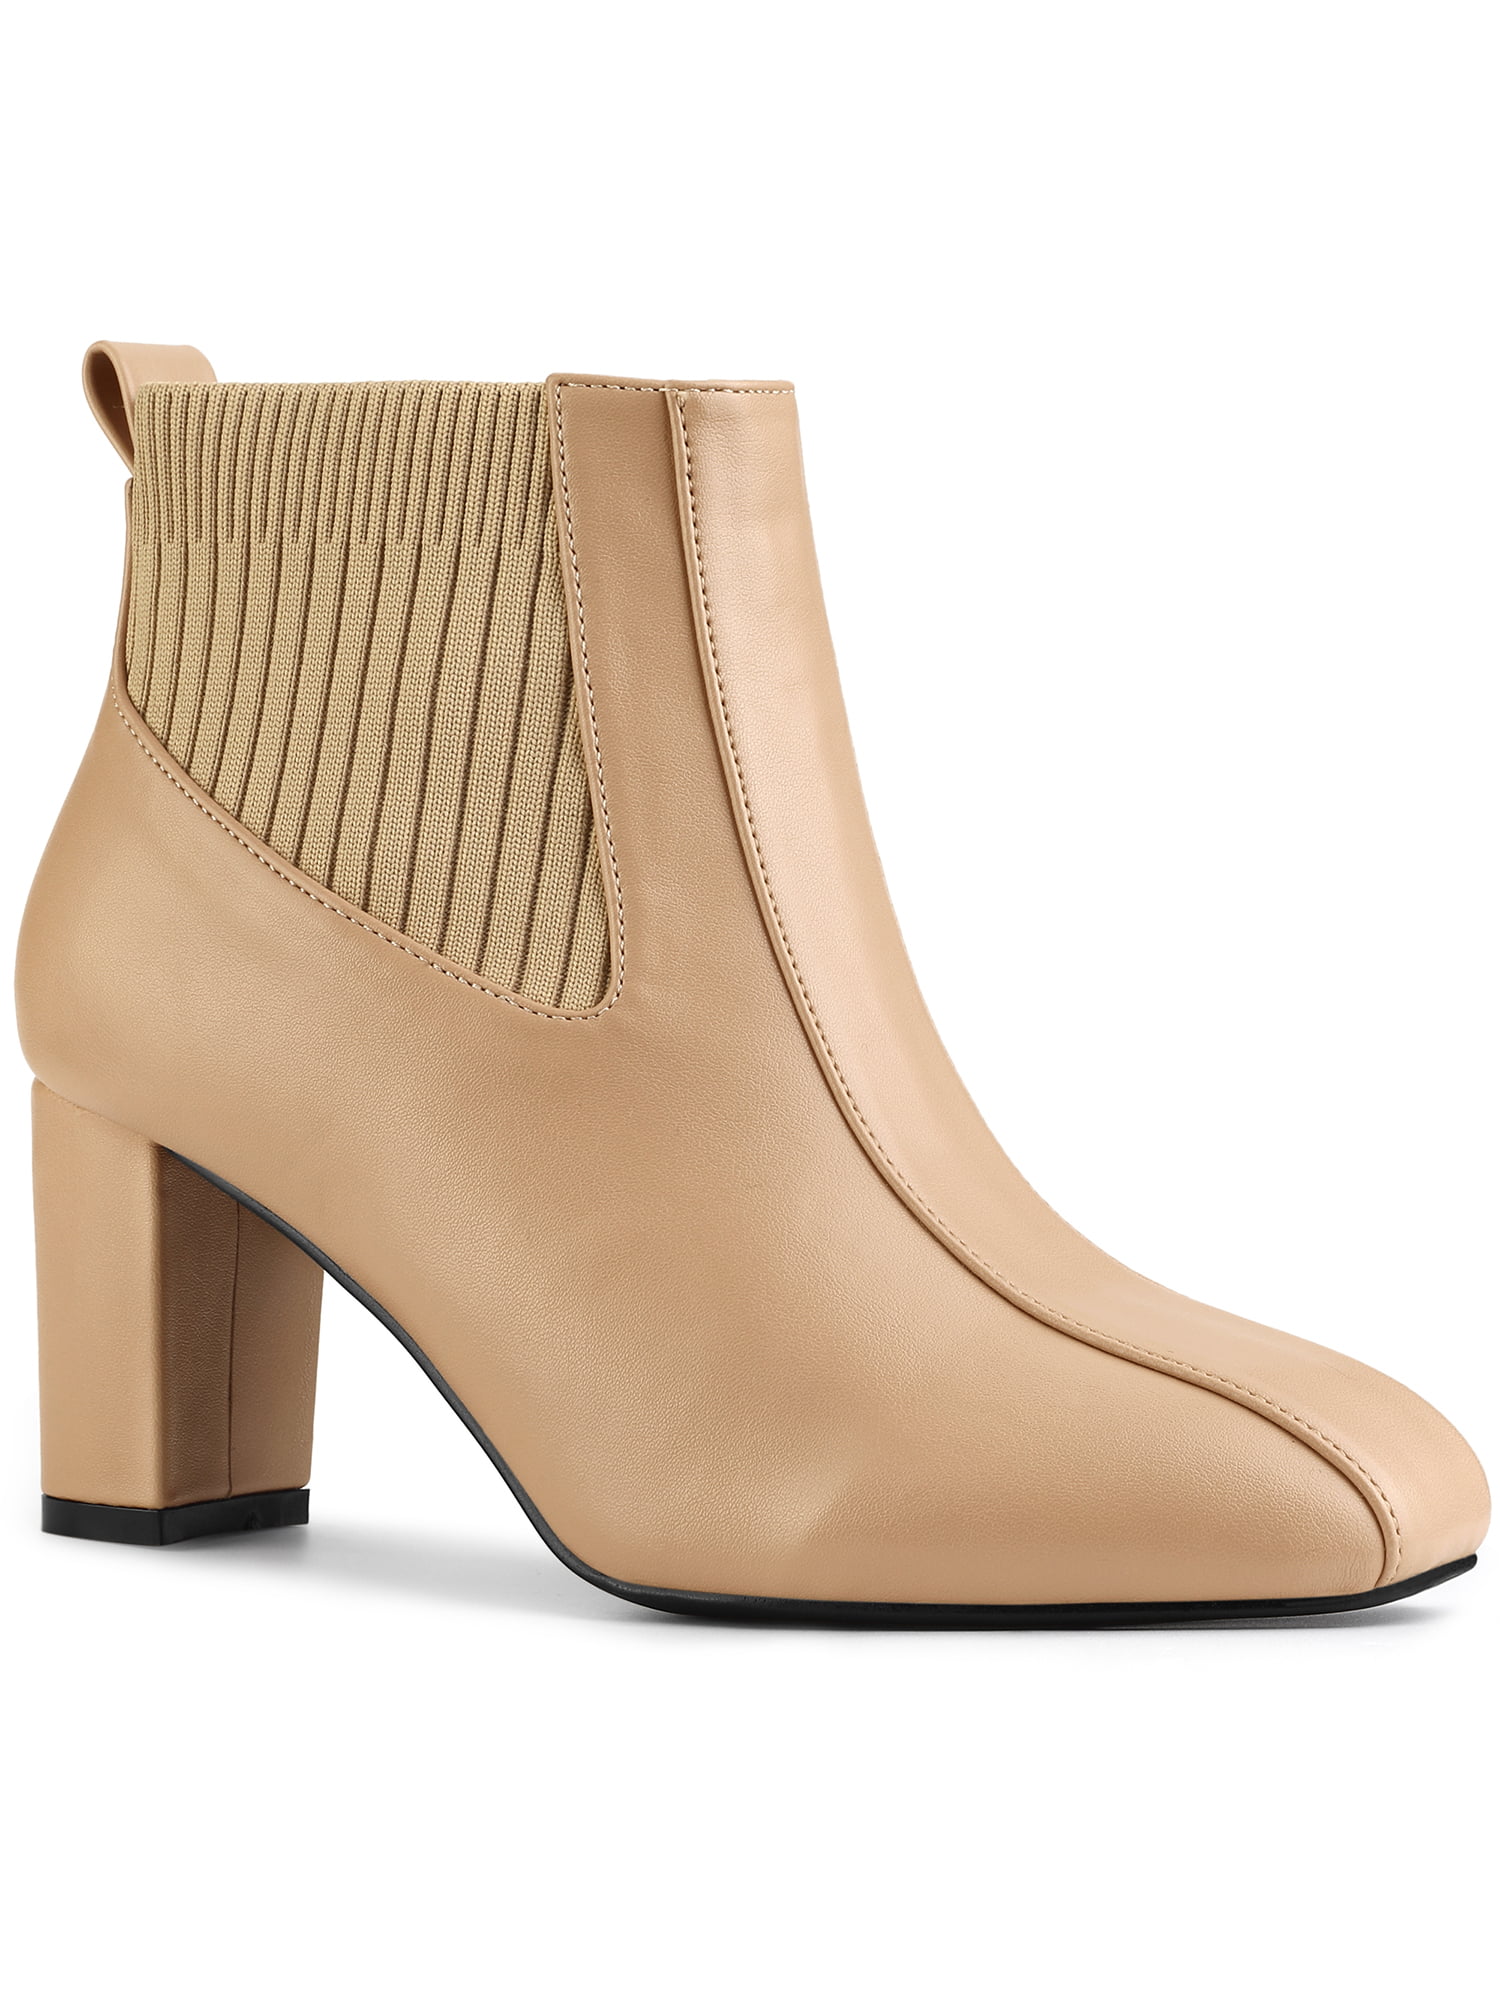 Unique Bargains Women's Toe Block Heels Elastic Boots - Walmart.com